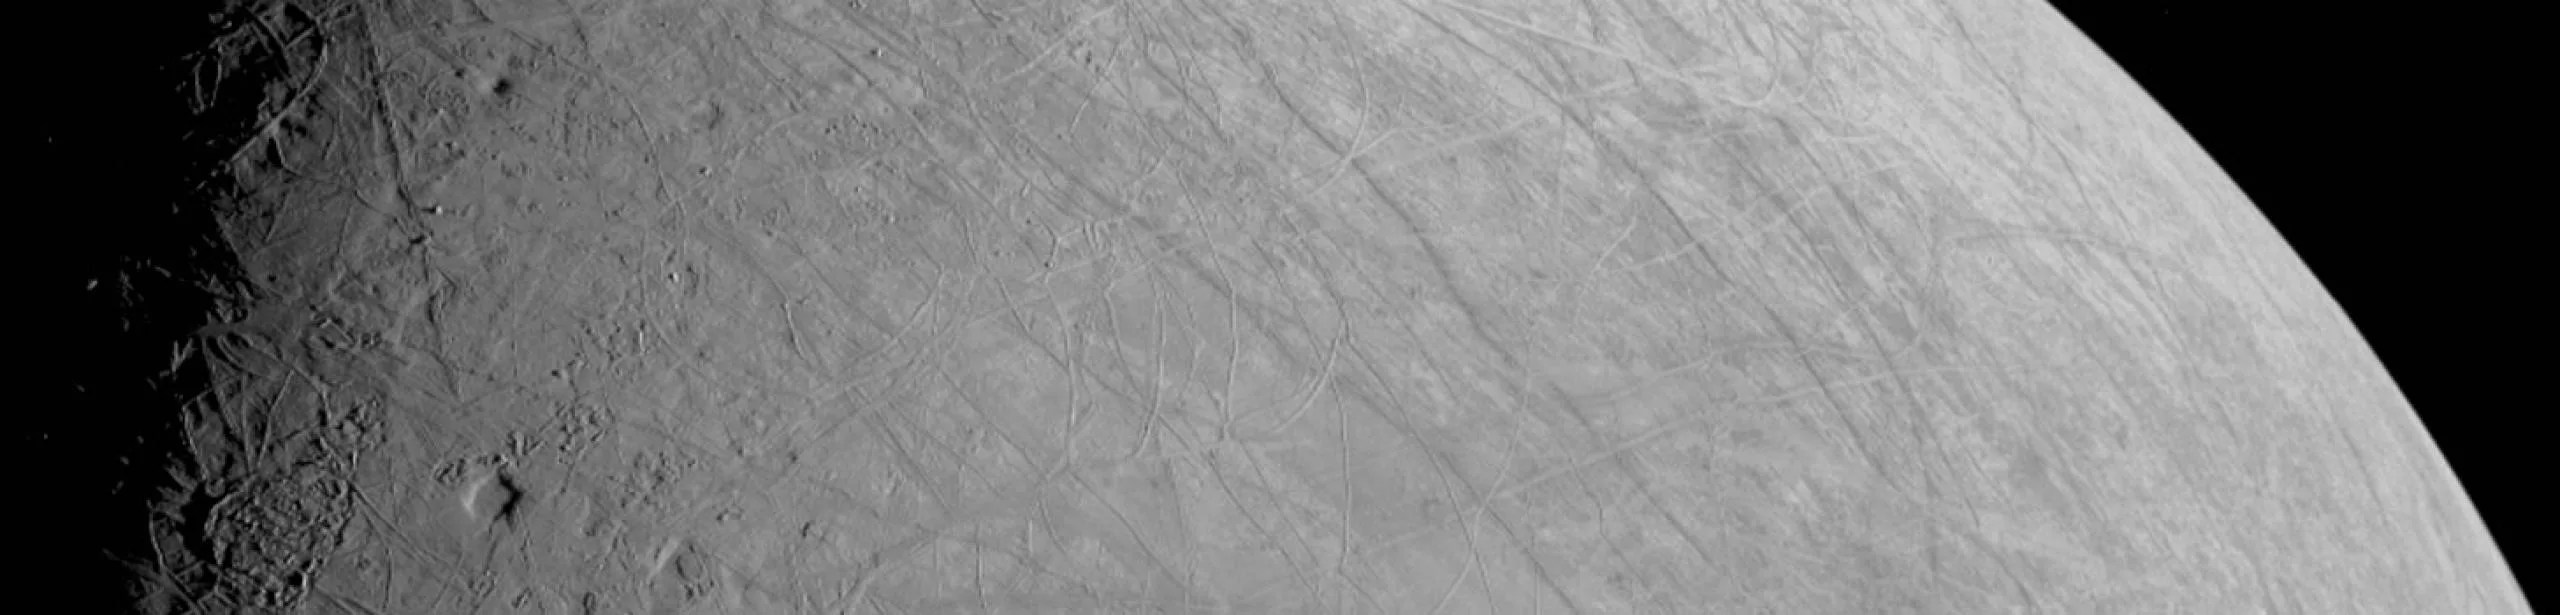 La luna Europa vista por Juno el 29 de septiembre de 2022.